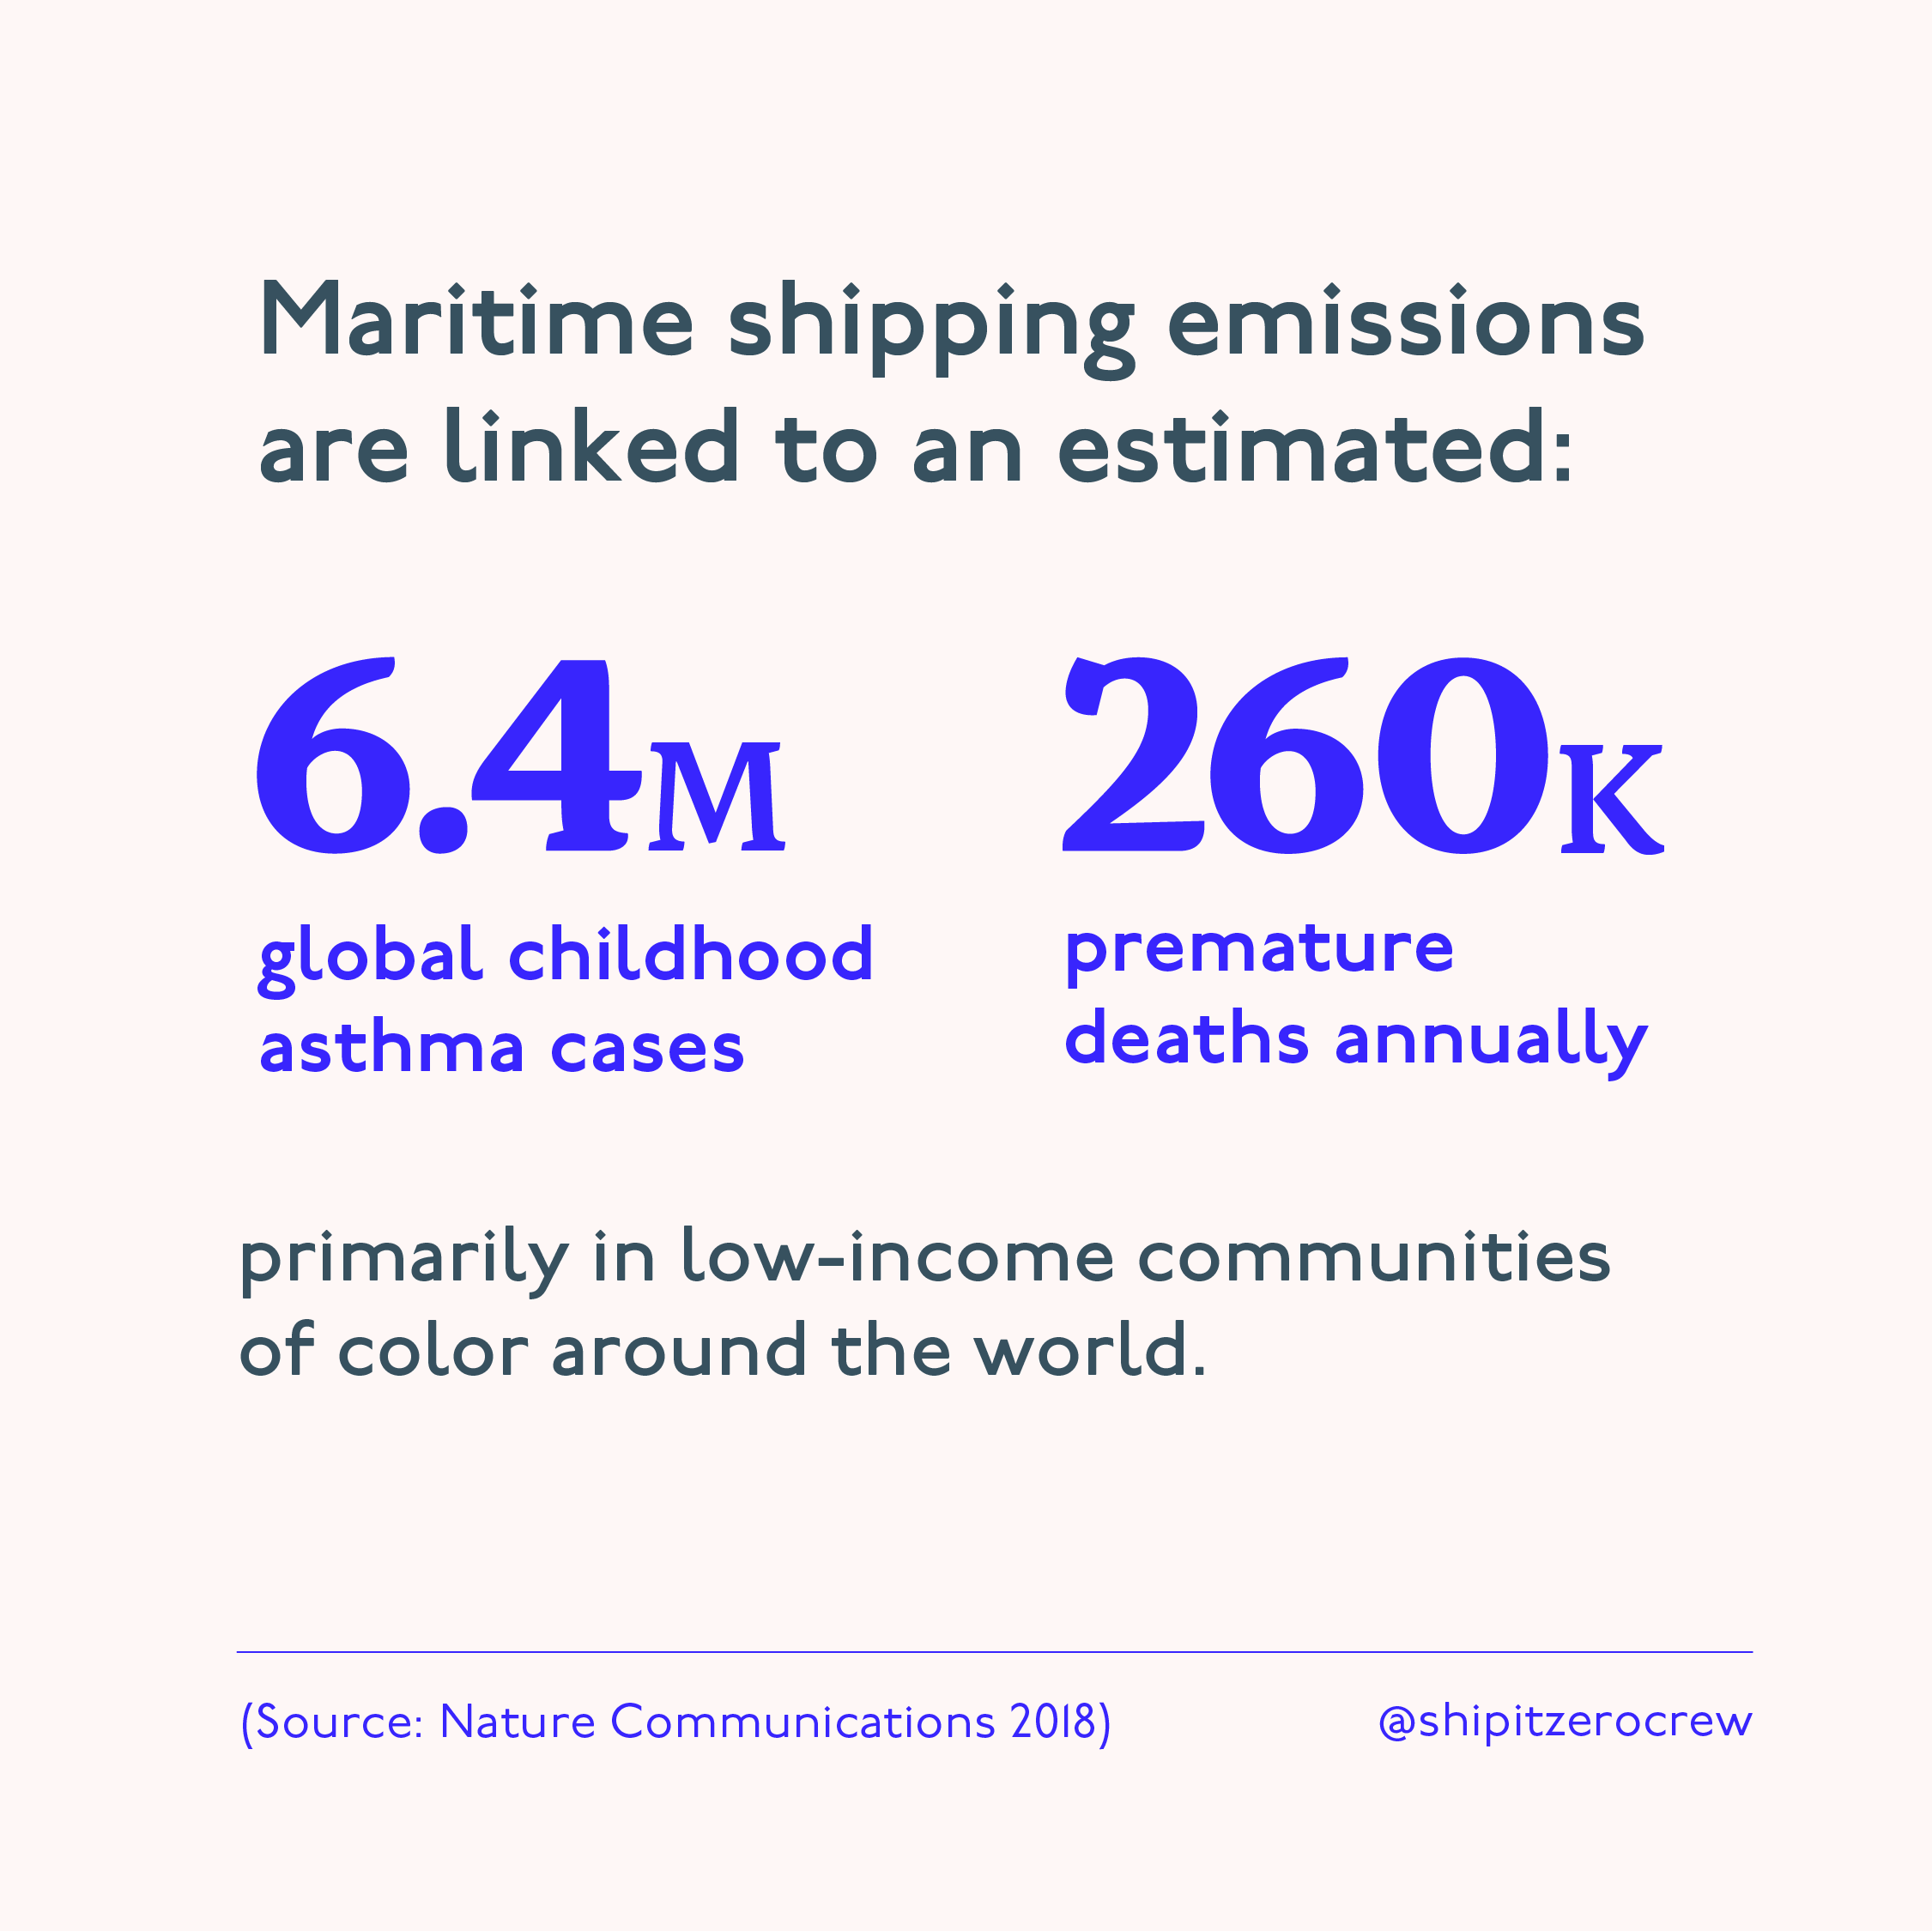 Gráfico que comparte la relación estimada de las emisiones del transporte marítimo con los casos de asma infantil y las muertes prematuras